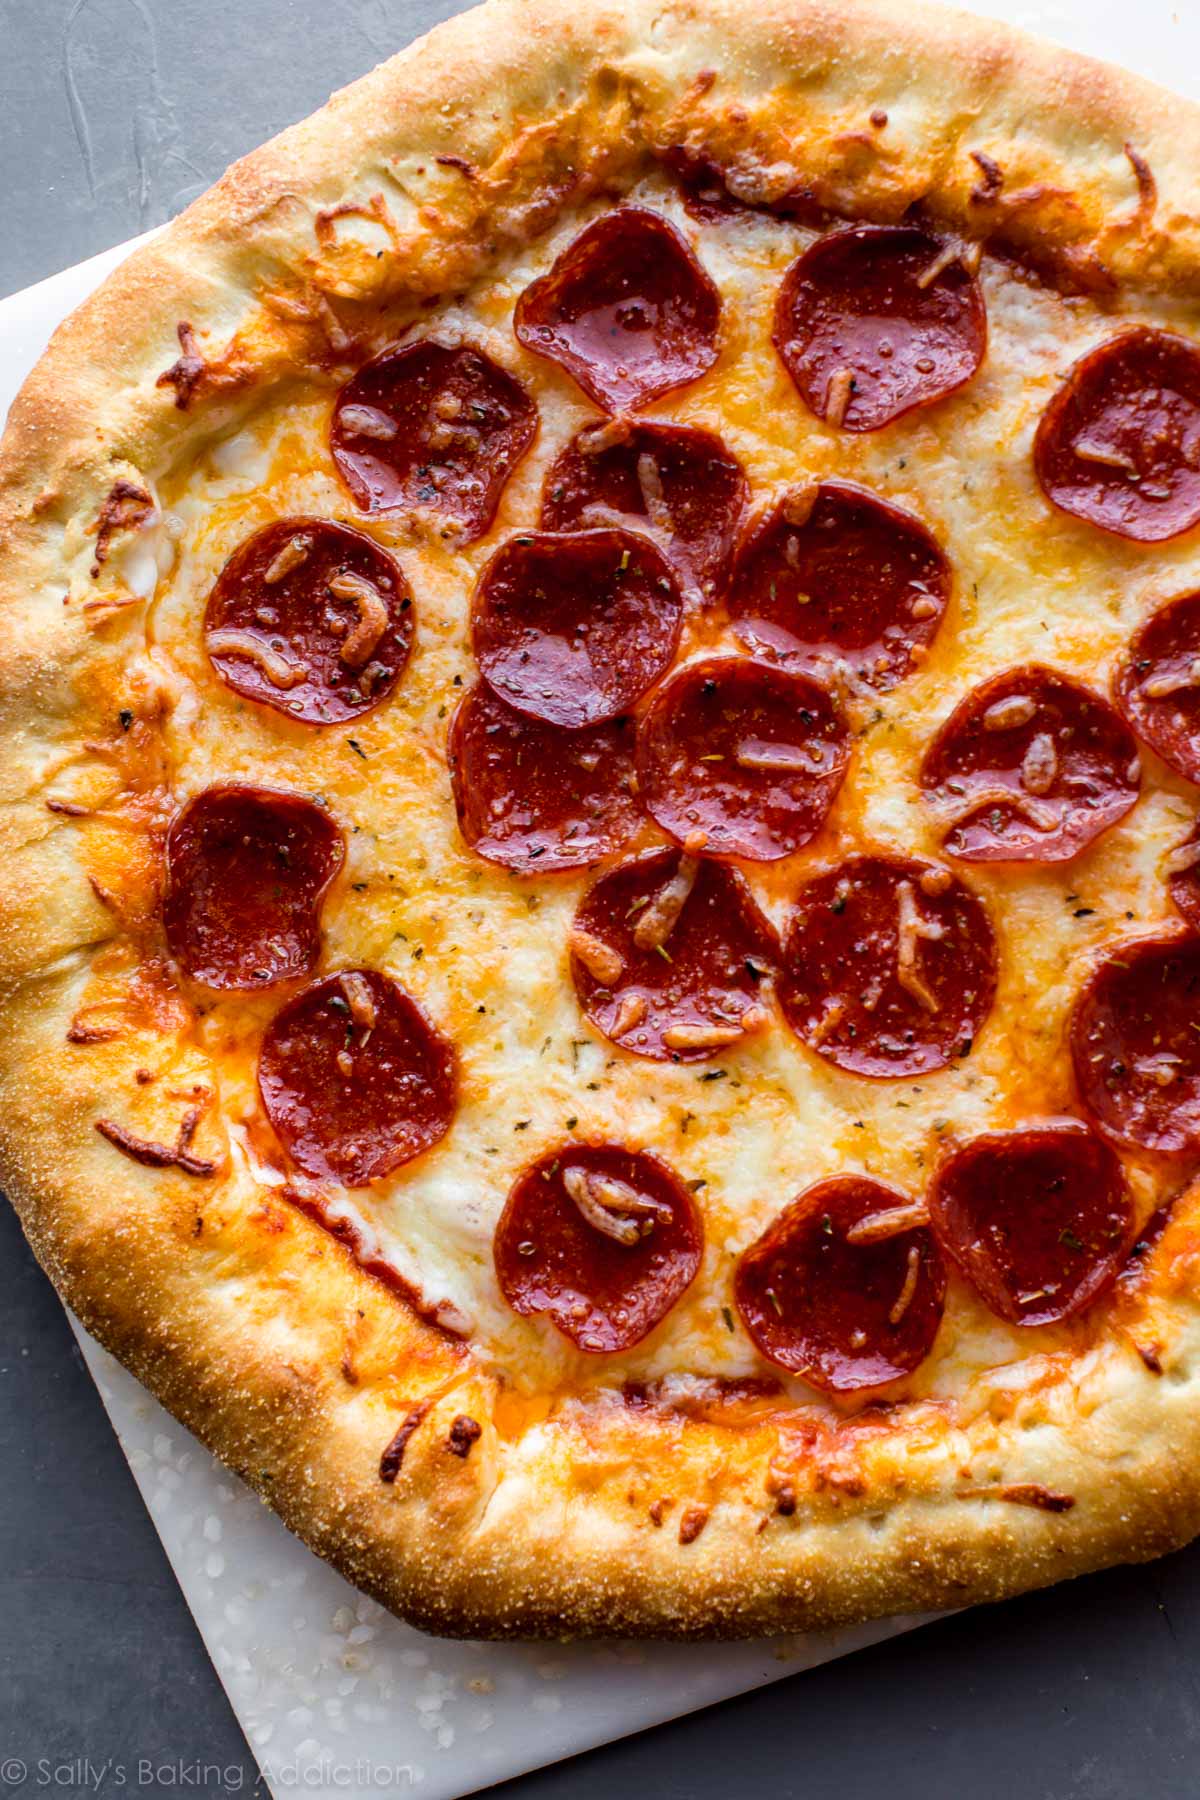 Comment faire une pizza au pepperoni à la croûte farcie au fromage sur sallysbakingaddiction.com Croûte à pizza maison FACILE!